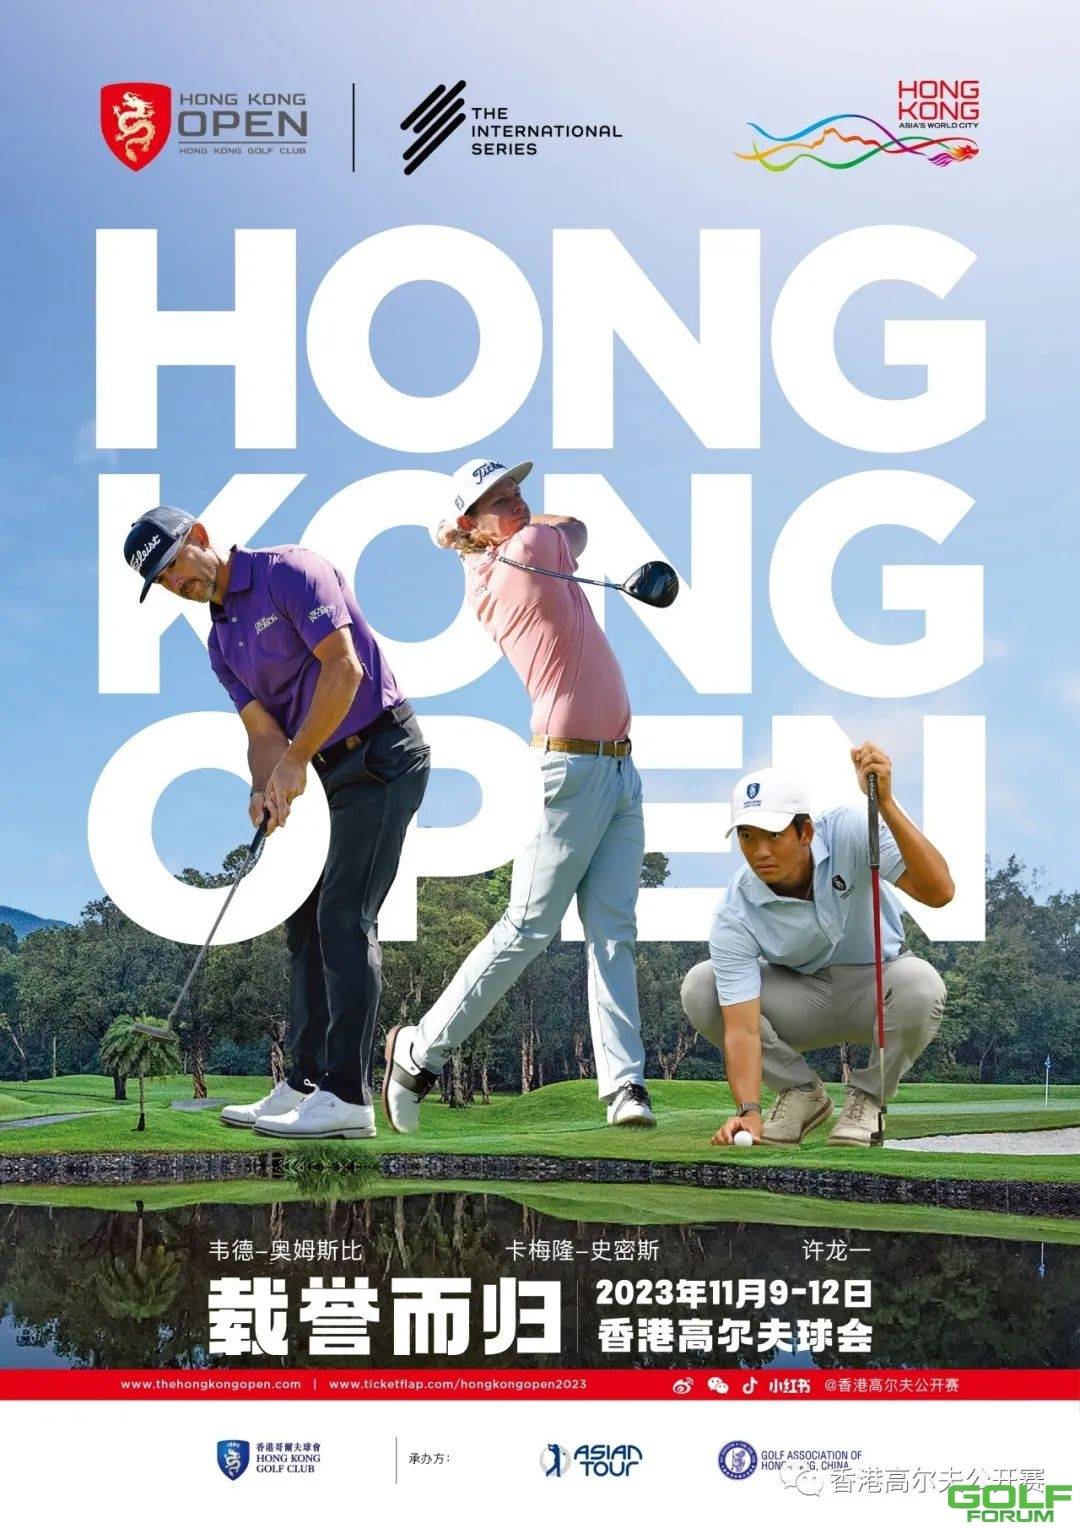 2023香港高尔夫公开赛isback！